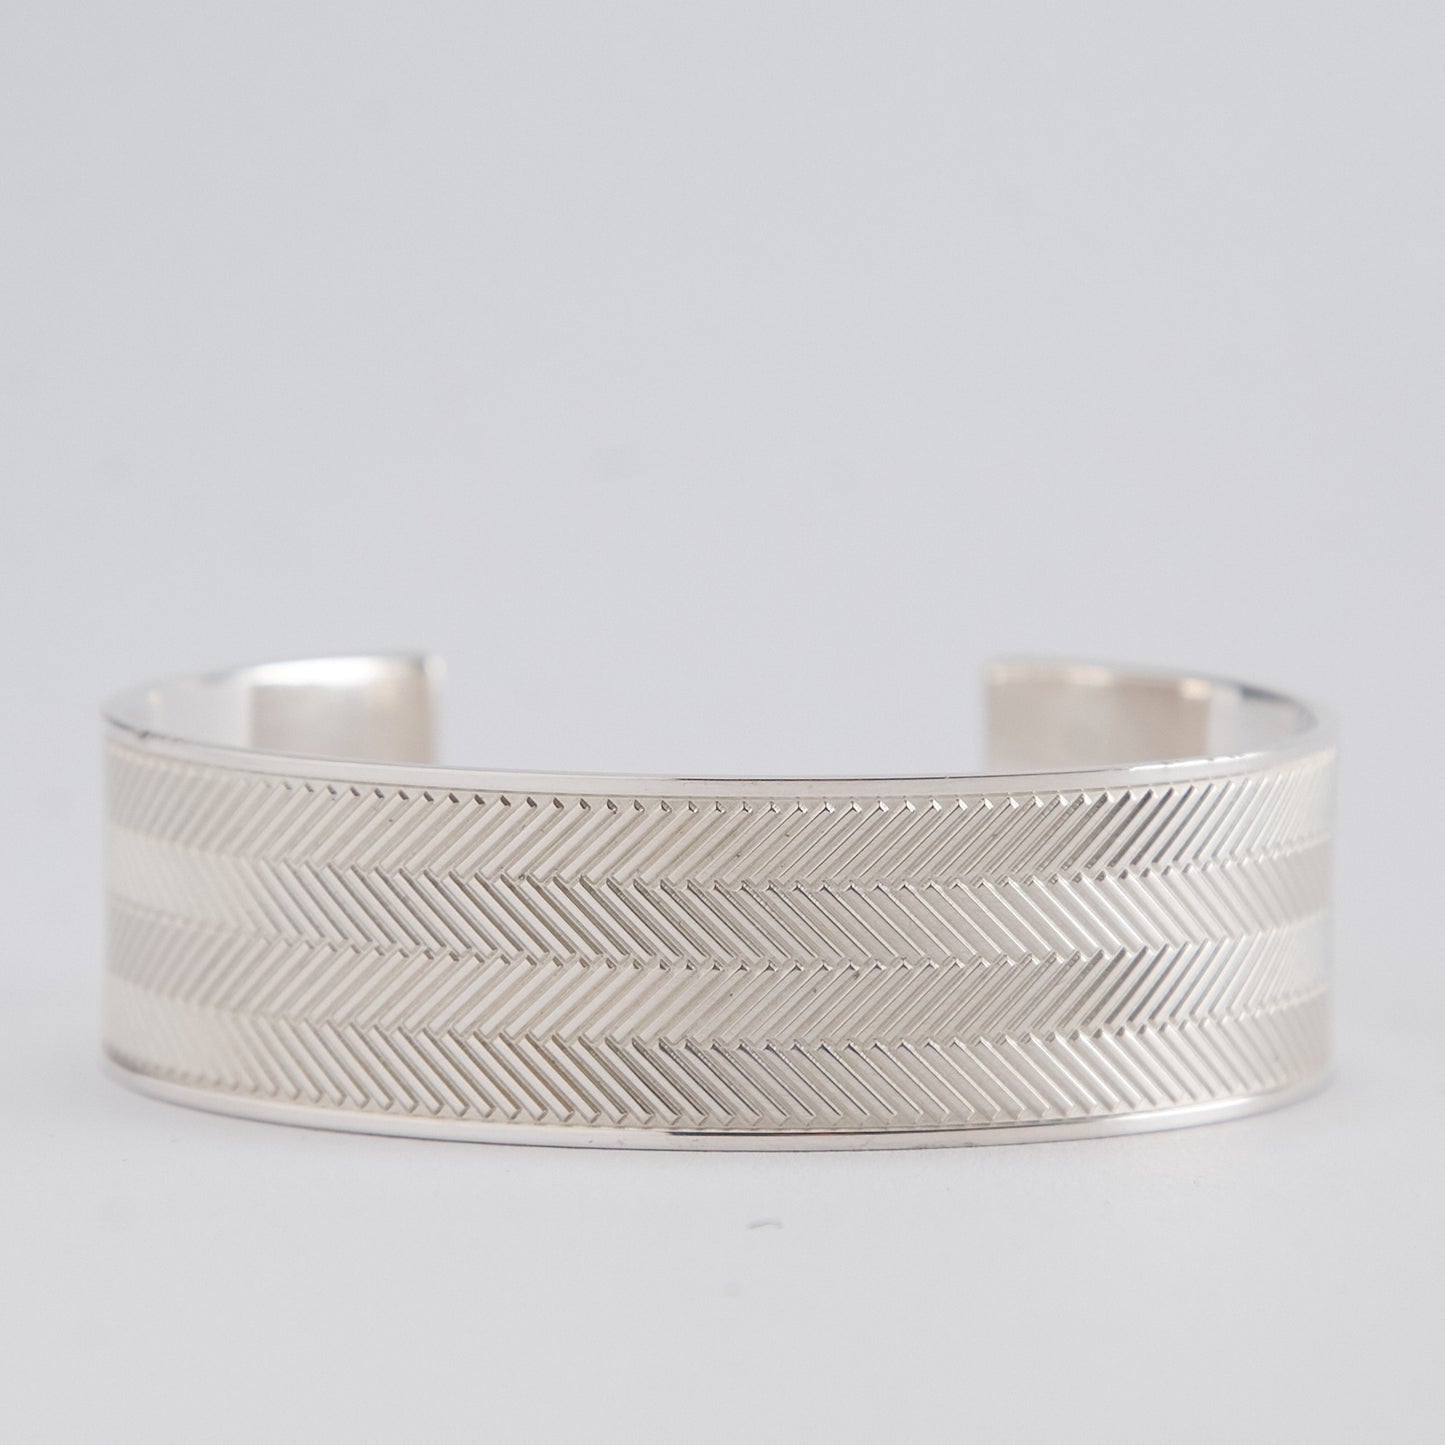 Silver Bracelet with Herringbone Engraving - Wide